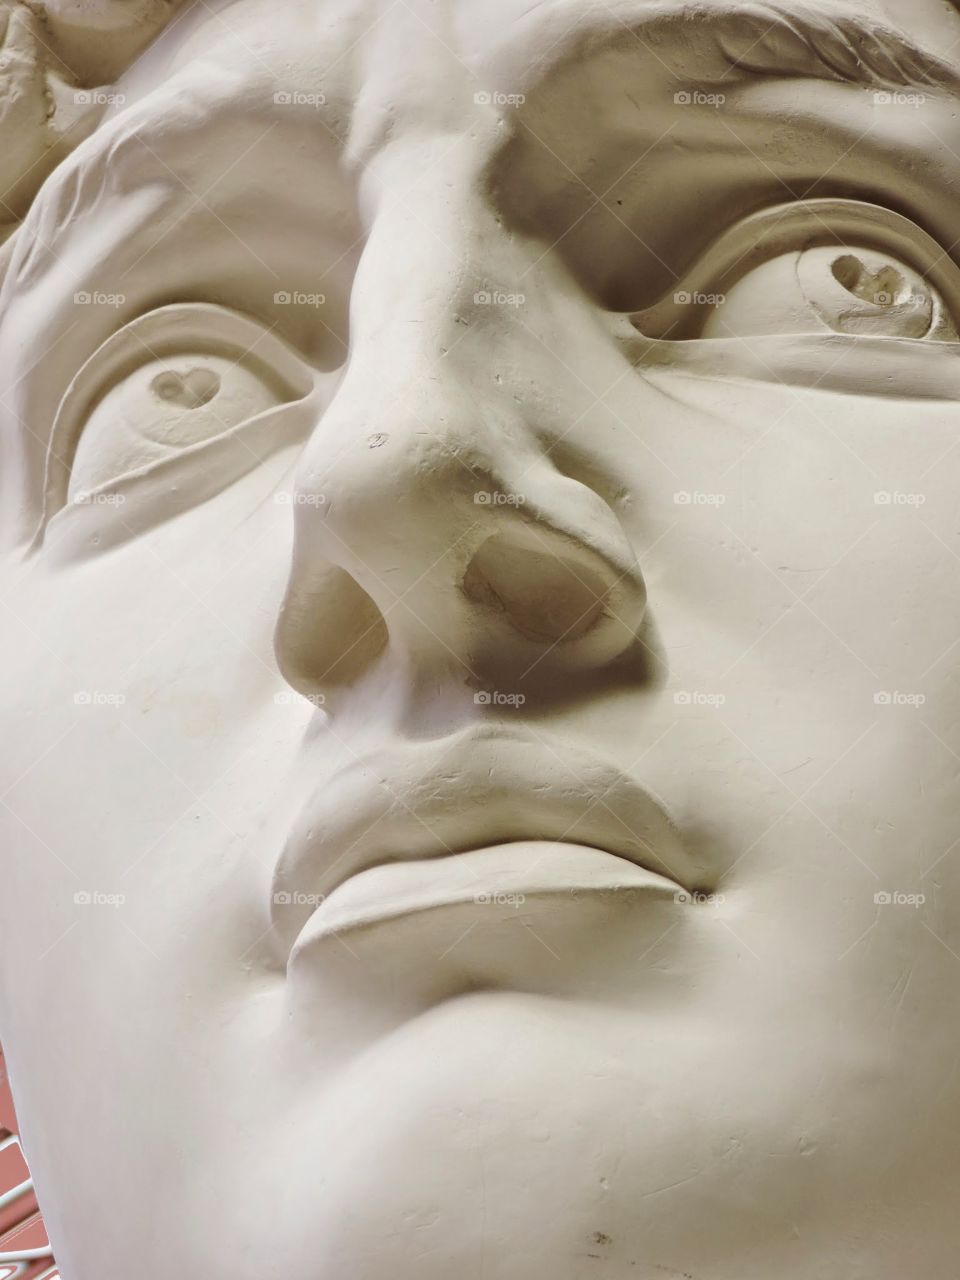 Michelangelo's David face ( gypsum copy). It's a gypsum copy of David head into a public space in Palermo 